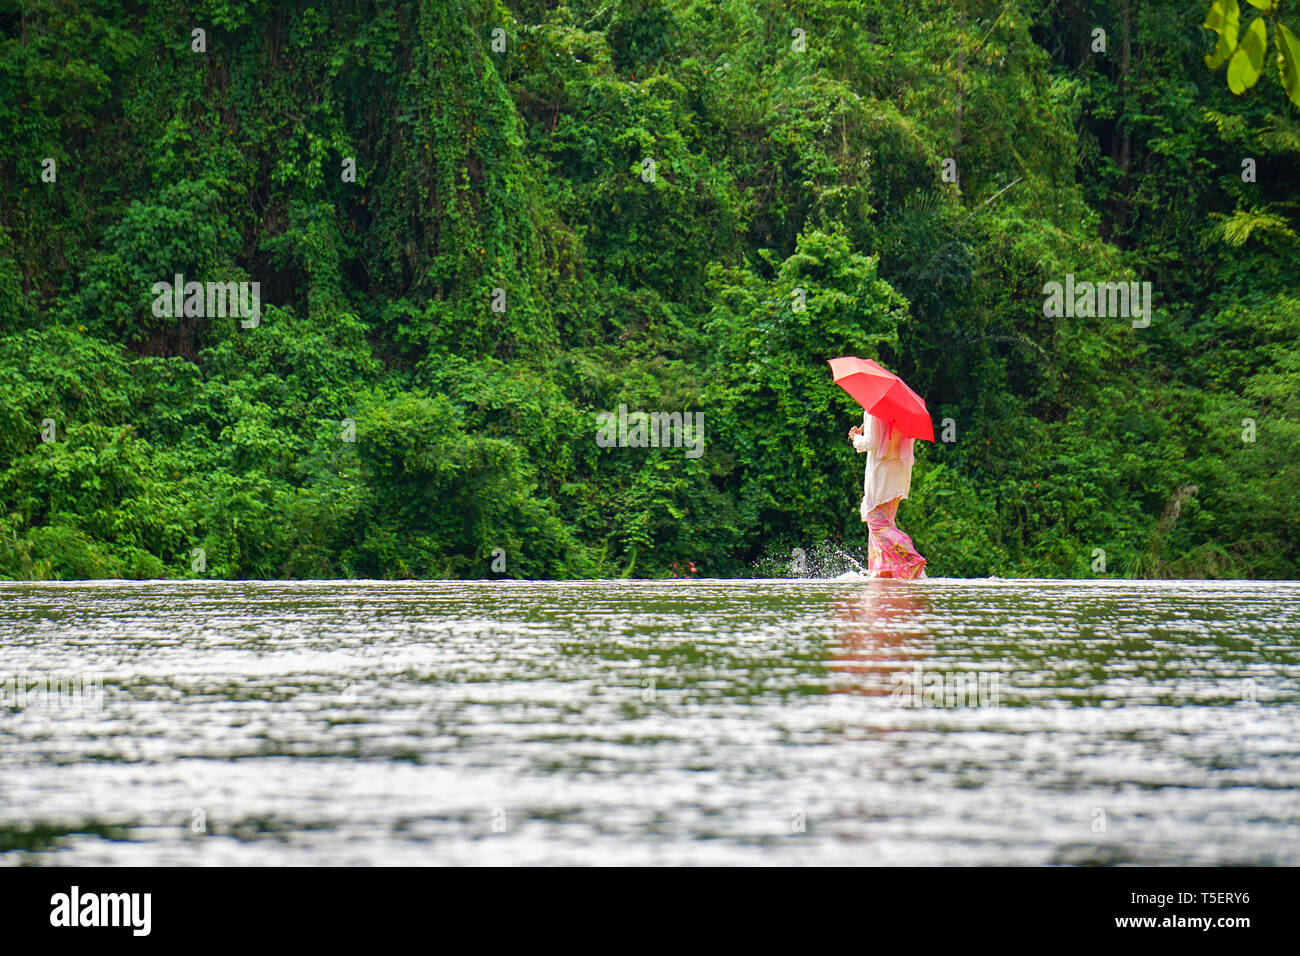 Signora in costume tradizionale chiamato Kebaya con ombrellone rosso Passeggiate sul fiume che attraversa con natura verde dello sfondo. Immagine adatta per i viaggi Foto Stock